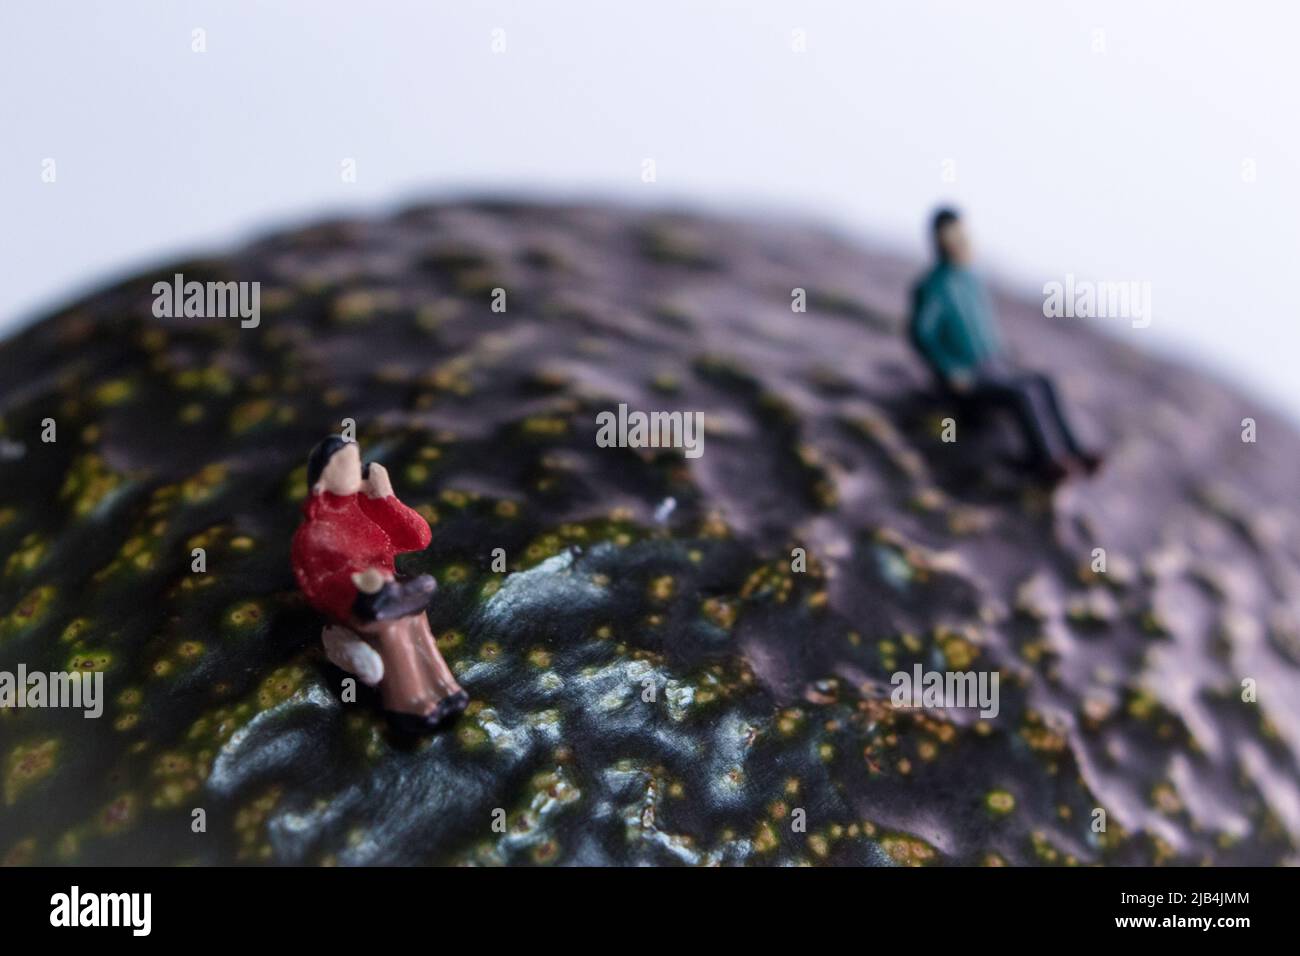 Eine Miniatur-Frau im roten Mantel, die auf einer Avocado (Alligatorbirne) sitzt. Die Frauen halten Abstand von dem Kerl. Stockfoto